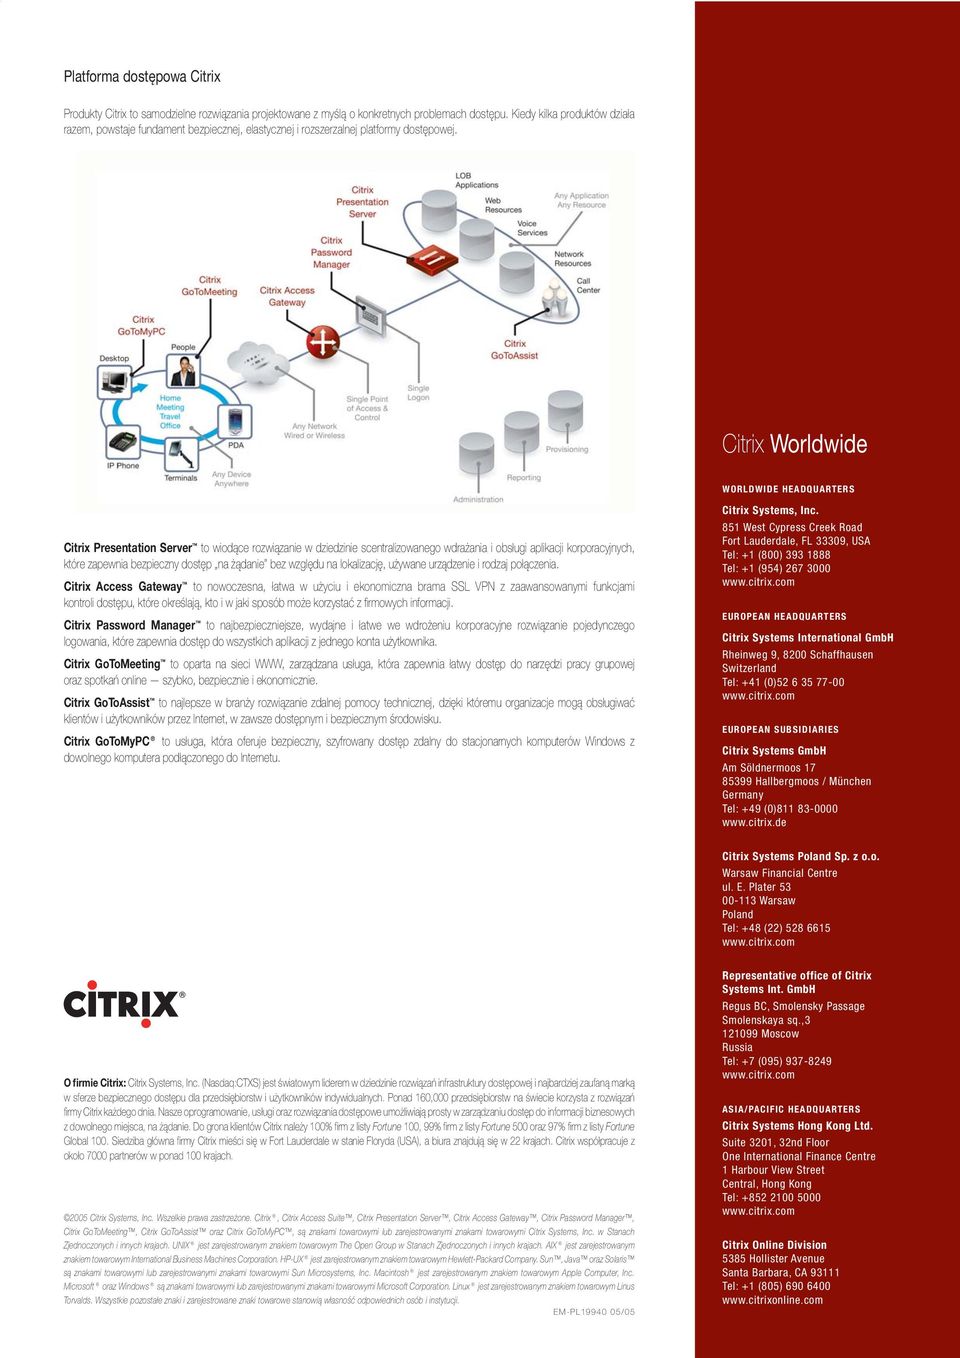 Citrix Worldwide WORLDWIDE HEADQUARTERS Citrix Presentation Server to wiodące rozwiązanie w dziedzinie scentralizowanego wdrażania i obsługi aplikacji korporacyjnych, które zapewnia bezpieczny dostęp